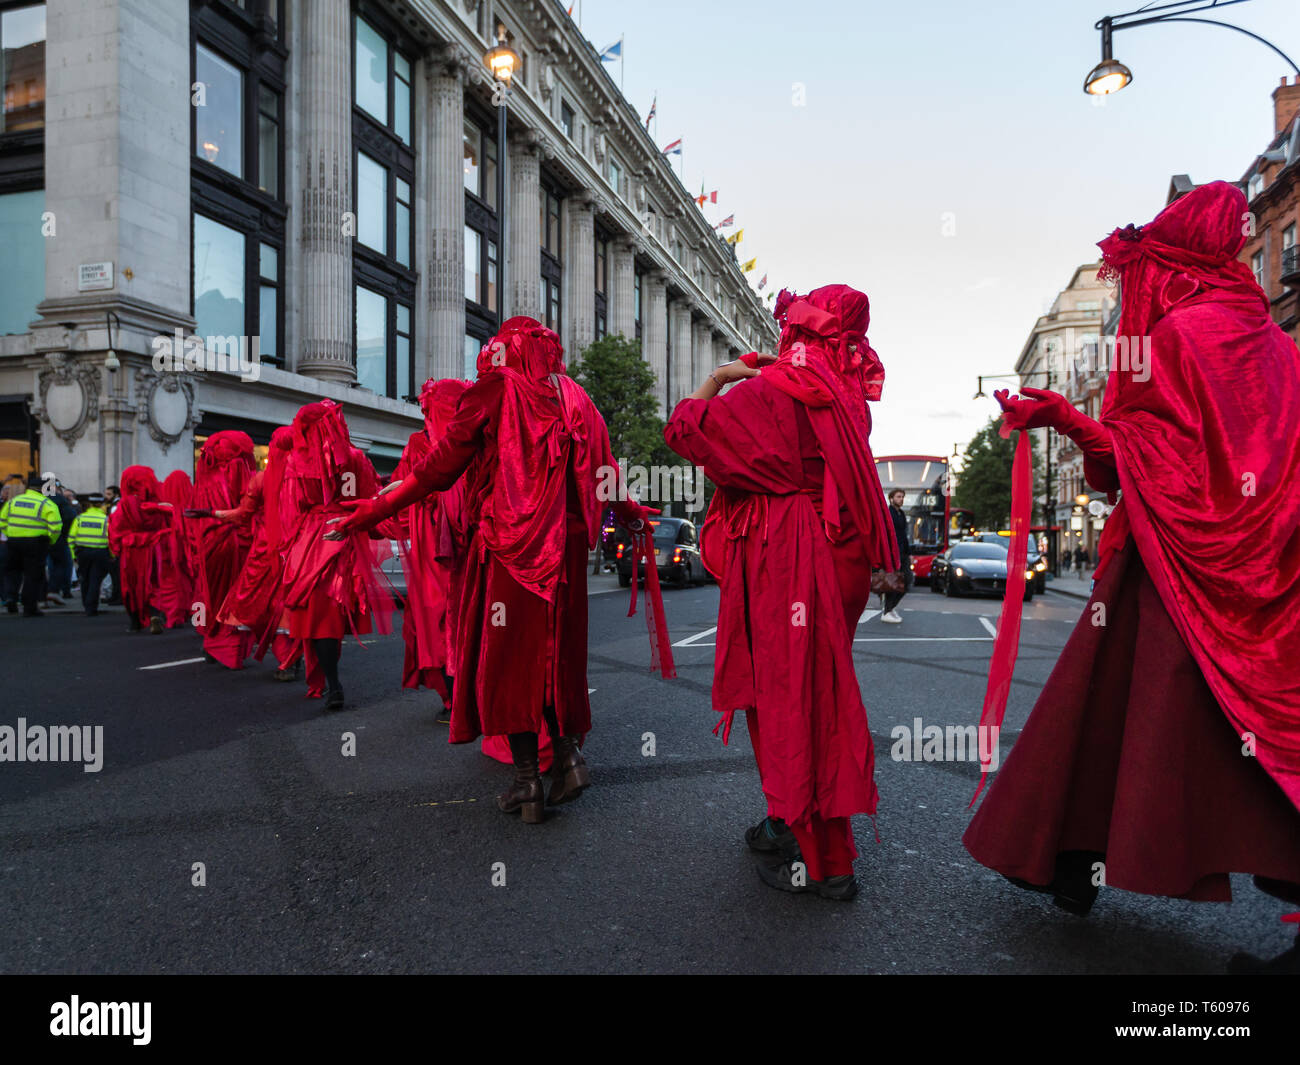 Rébellion Extinction activiste environnemental, le groupe-brigade rouge vu avoir manifesté à Selfridges sur Oxford Street le 25 avril 2019 à Londres Banque D'Images